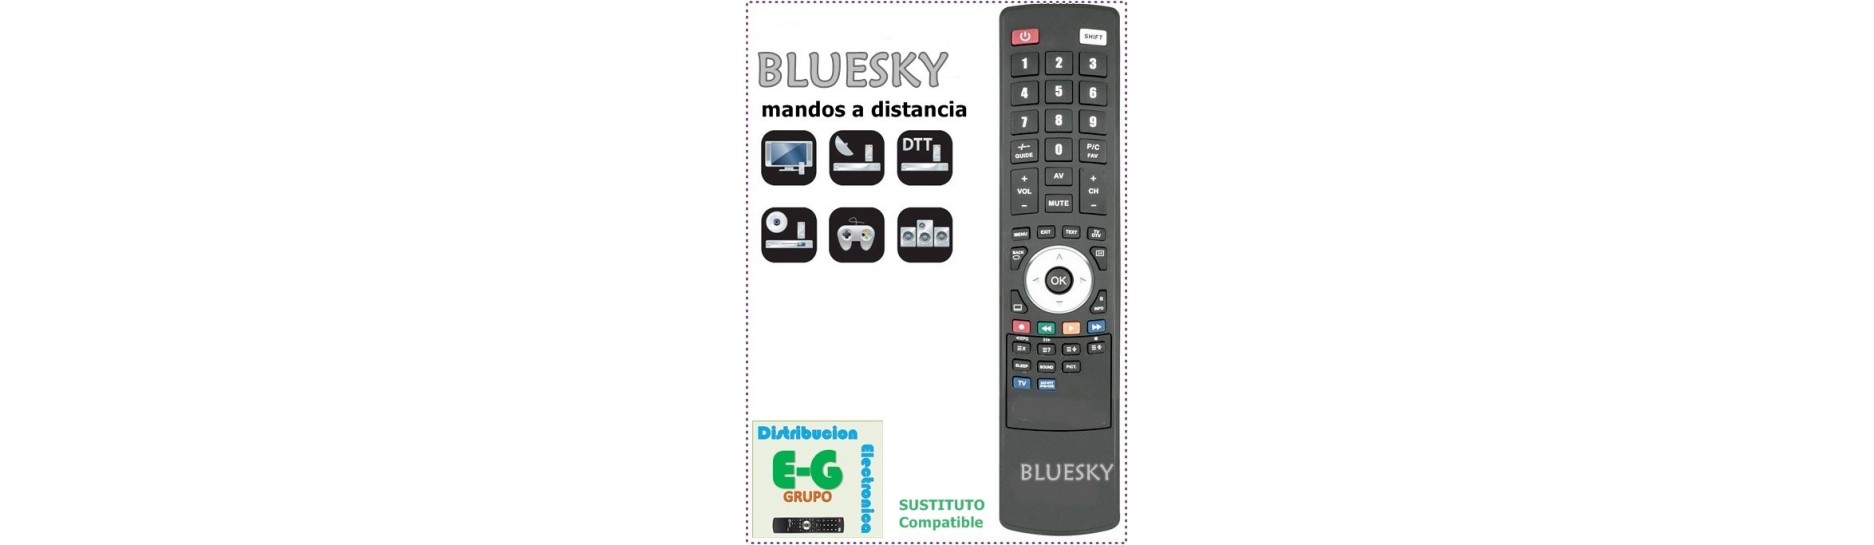 BLUESKY Mando para Televisión | Comprar Mando BLUESKY para Televisión